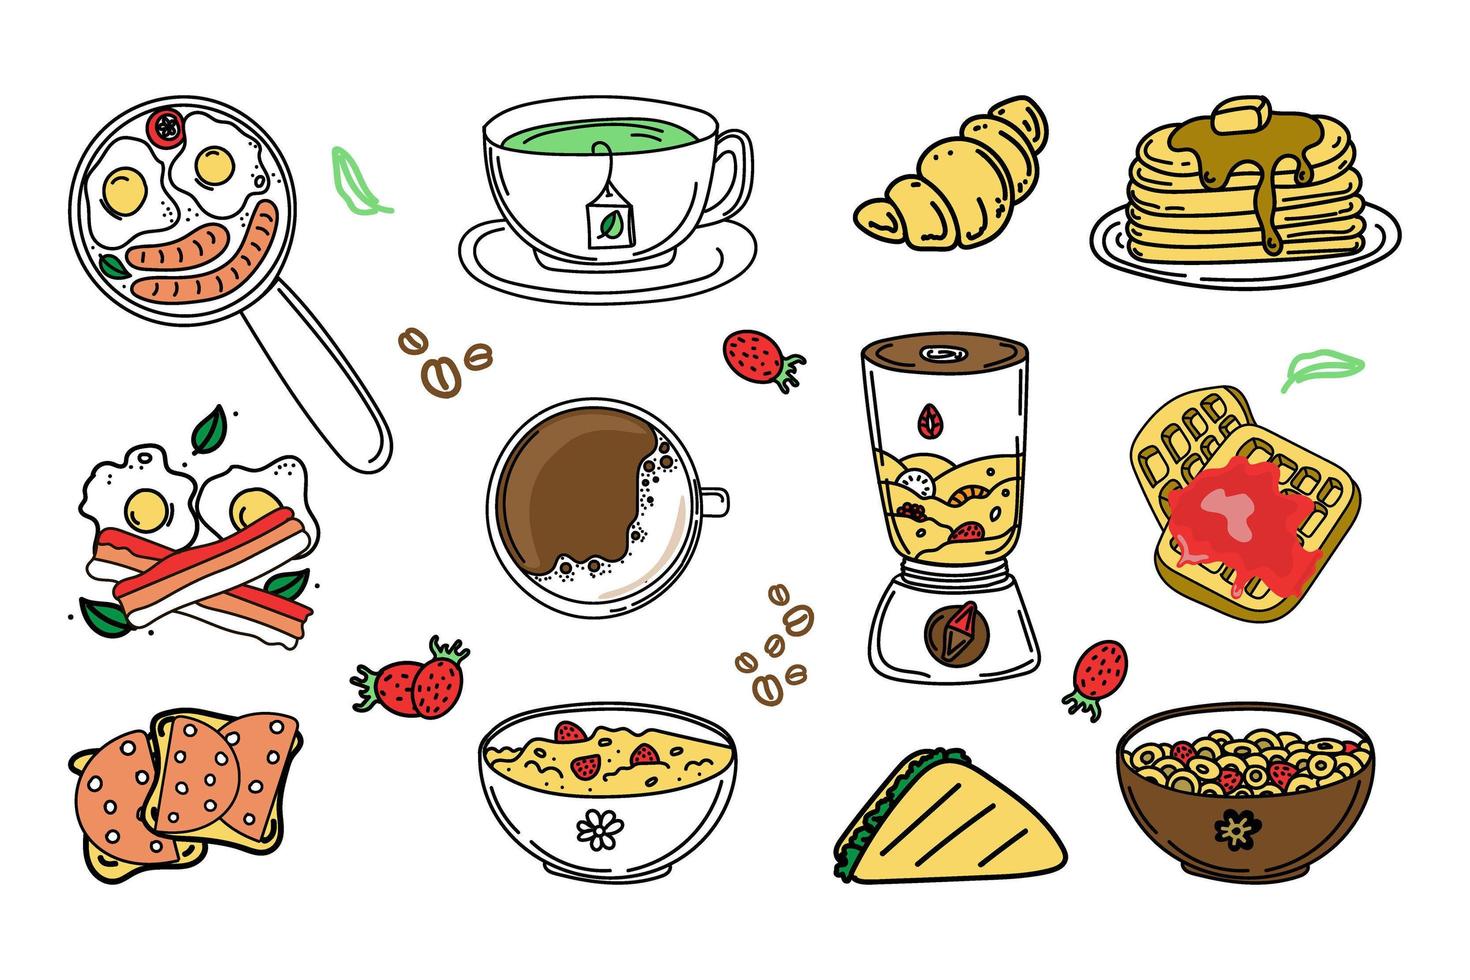 un conjunto de alimentos y bebidas para el desayuno. elementos estilo garabato dibujados a mano. desayuno. Buenos días. tortitas en un plato, gofres, avena con bayas, cereales, café y té. vector simple en garabato.